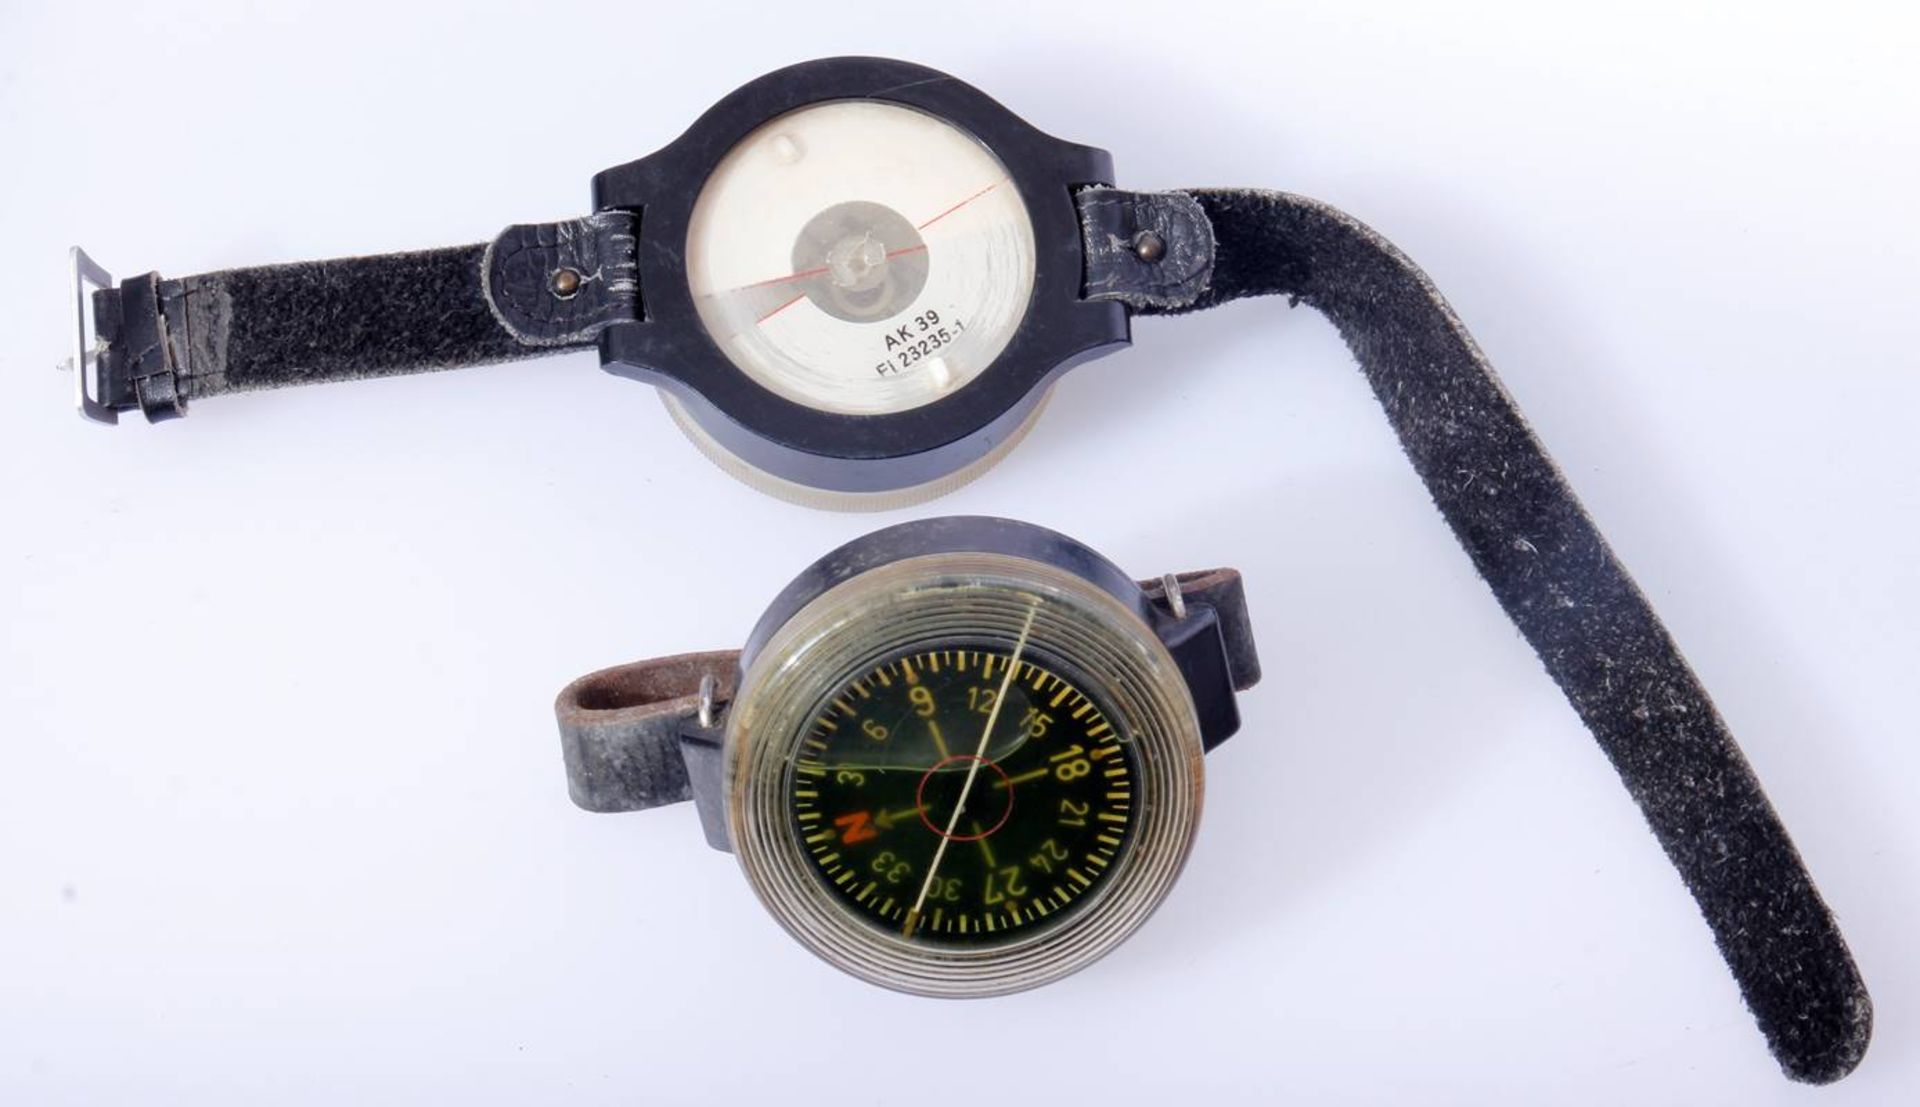 2 x Fliegerkompass Luftwaffe WehrmachtKompass für Fliegendes Personal am Lederband. Einmal mit FL